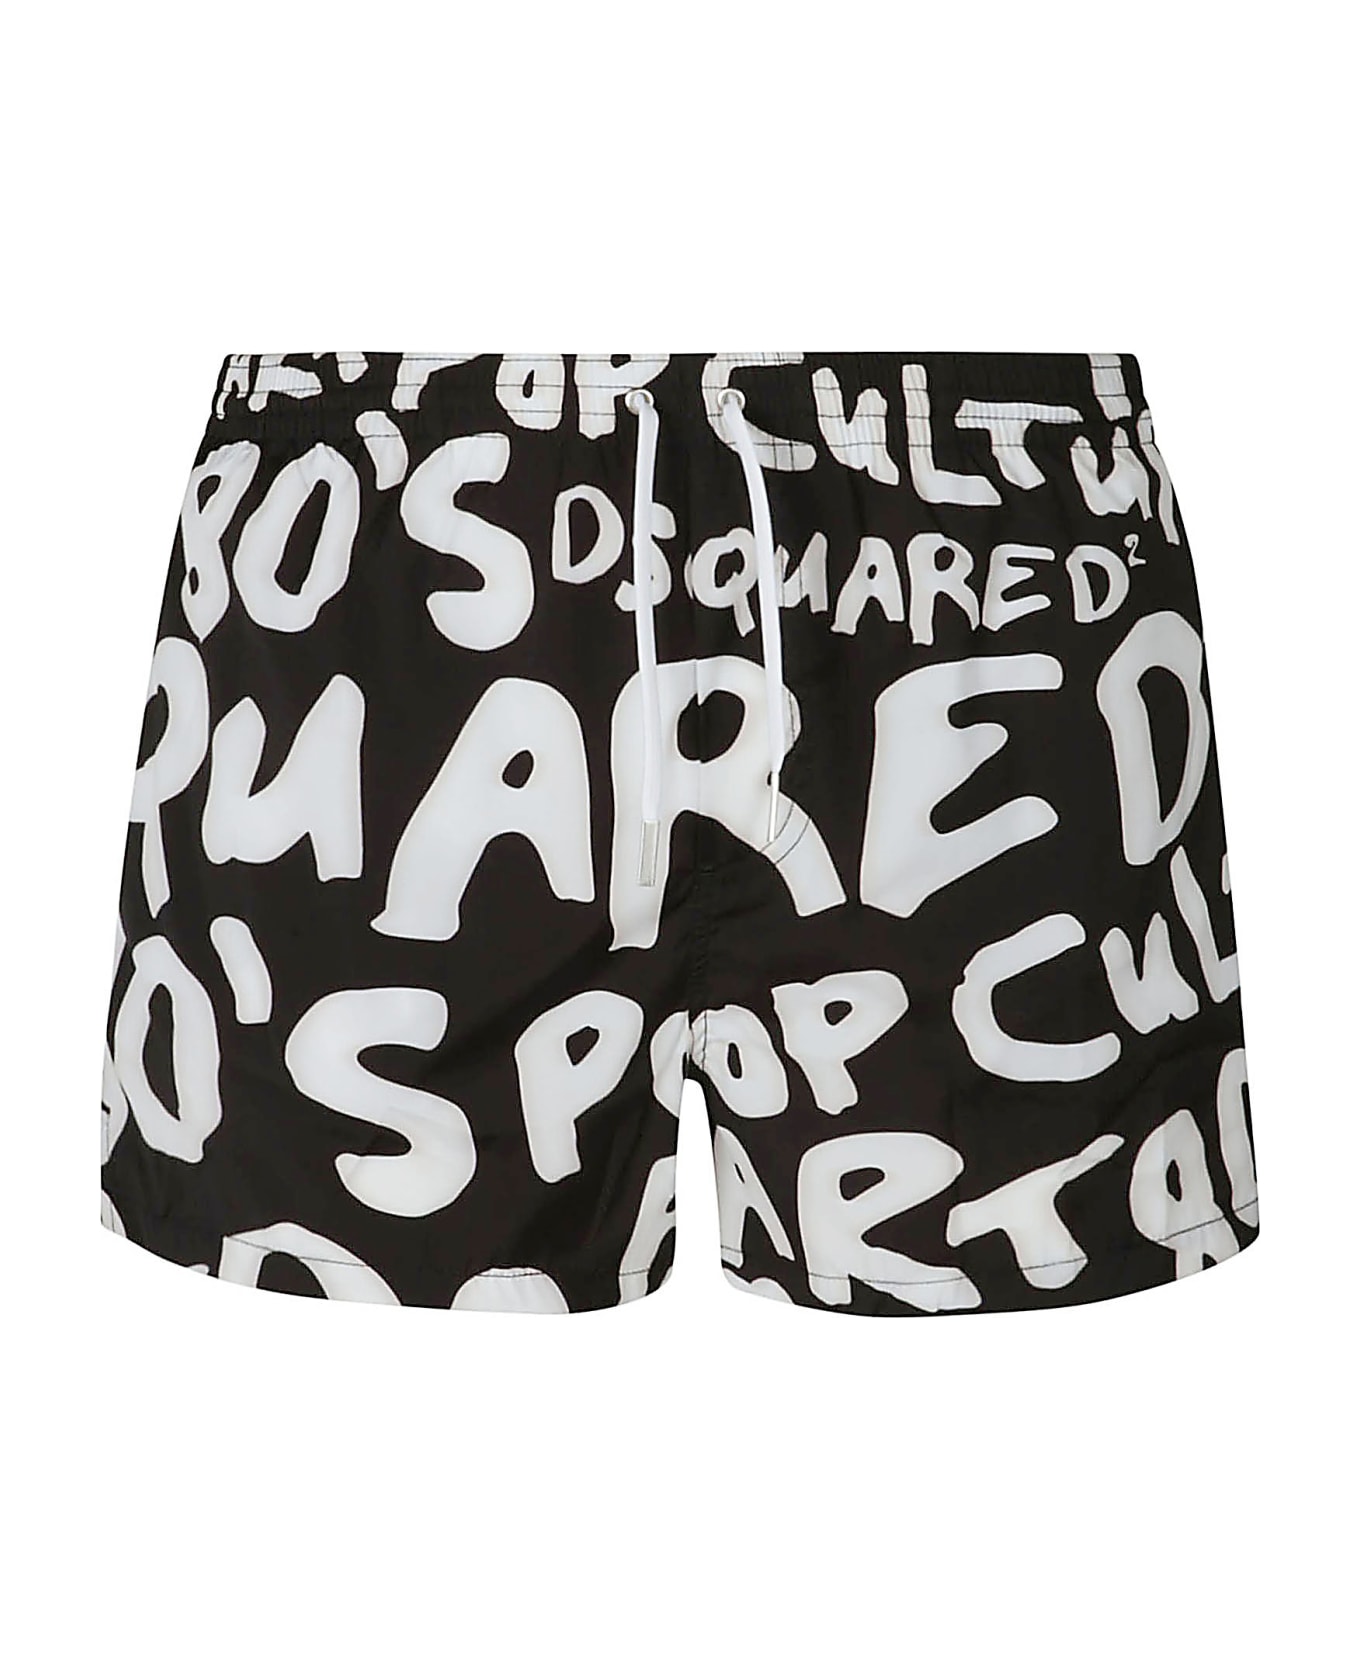 Dsquared2 Logo Printed Swim Shorts - Black/white ショートパンツ